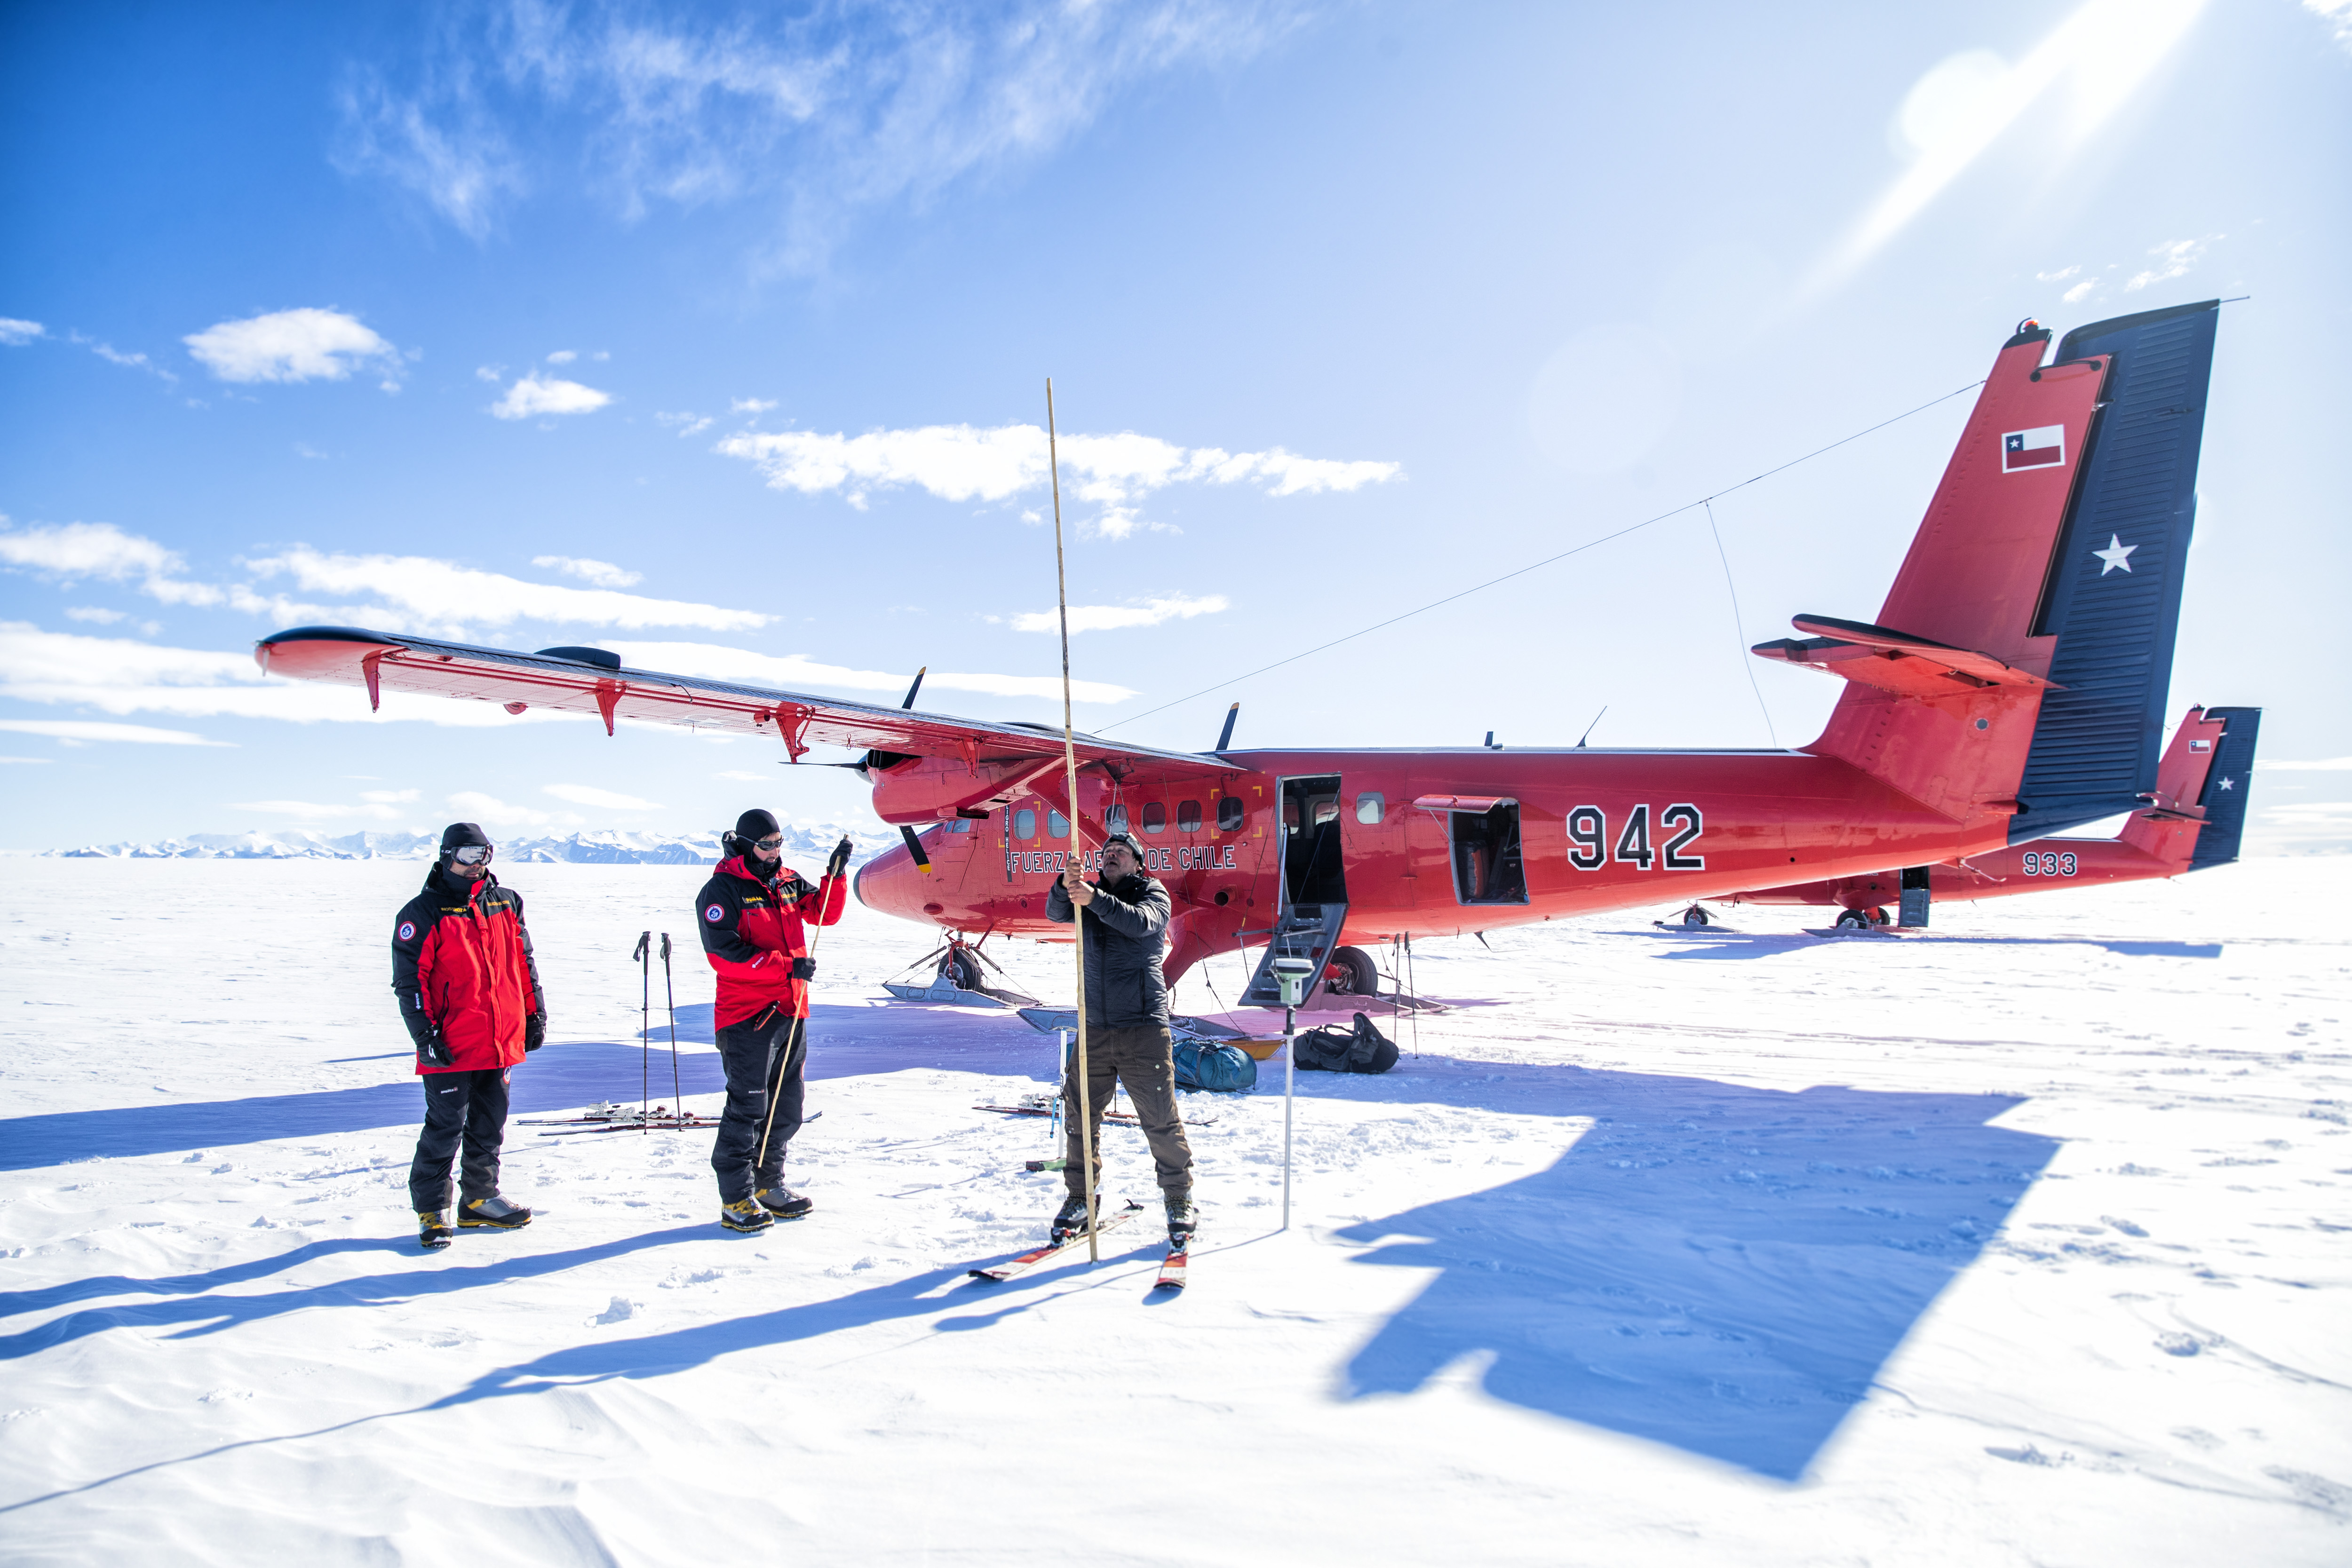 El glaciólogo Ricardo Jaña clava una vara de bambú en la mayor plataforma de hielo del mundo, la de Filchner-Ronne, escoltado por los exploradores militares 'Inmortal' y 'Prometeo'.